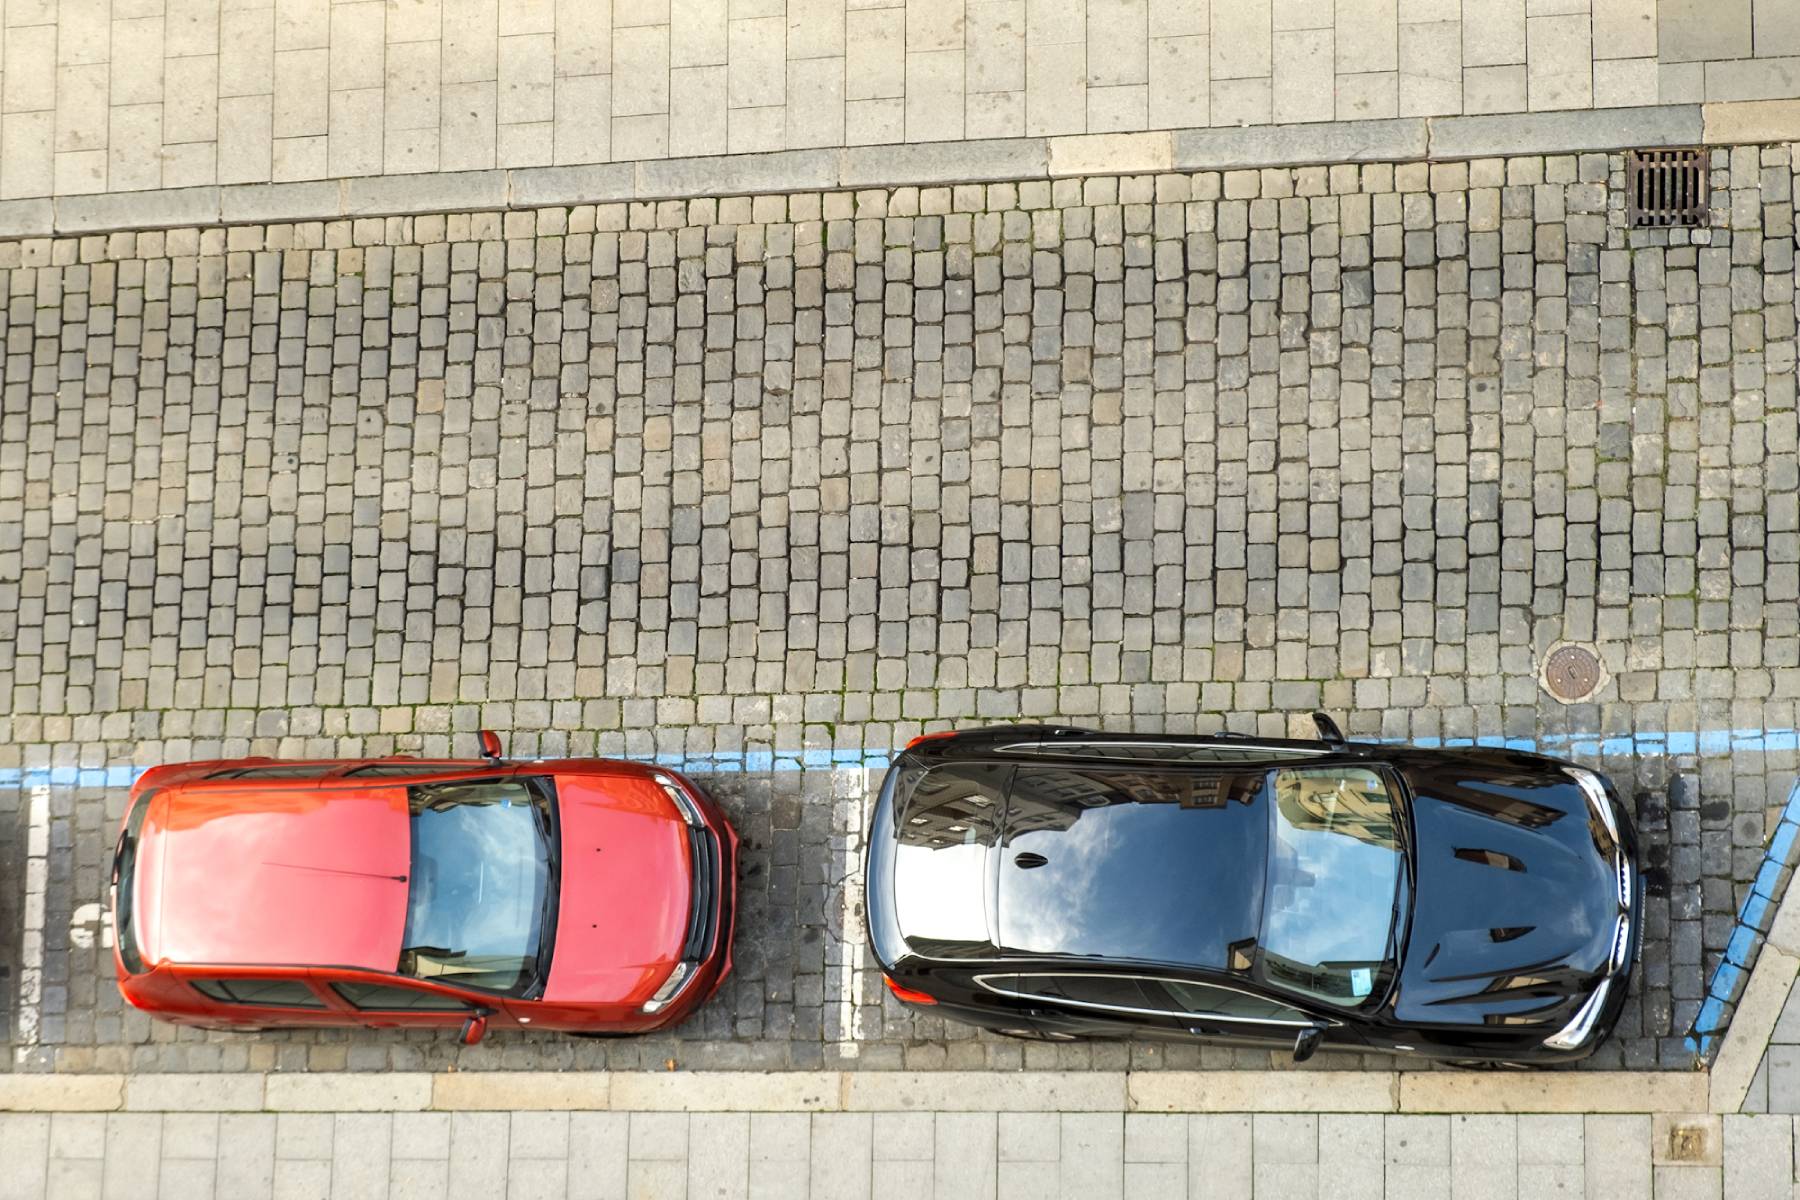 Pojazd parkuje równolegle przy prawej krawędzi jezdni.